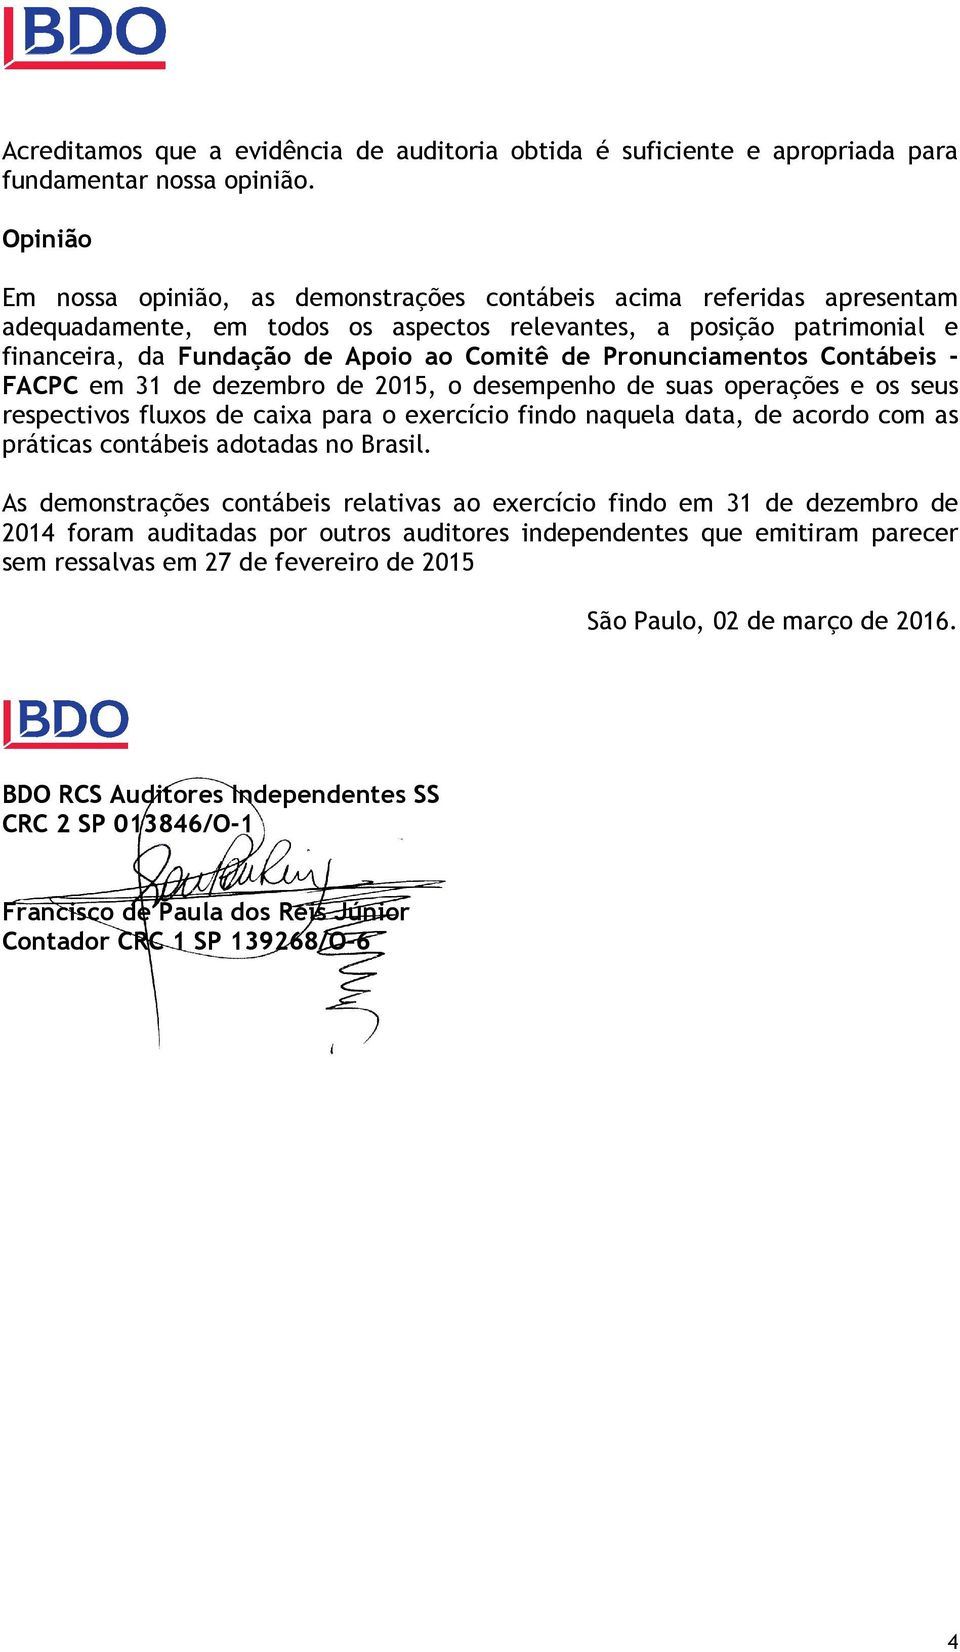 Pronunciamentos Contábeis - FACPC em 31 de dezembro de 2015, o desempenho de suas operações e os seus respectivos fluxos de caixa para o exercício findo naquela data, de acordo com as práticas